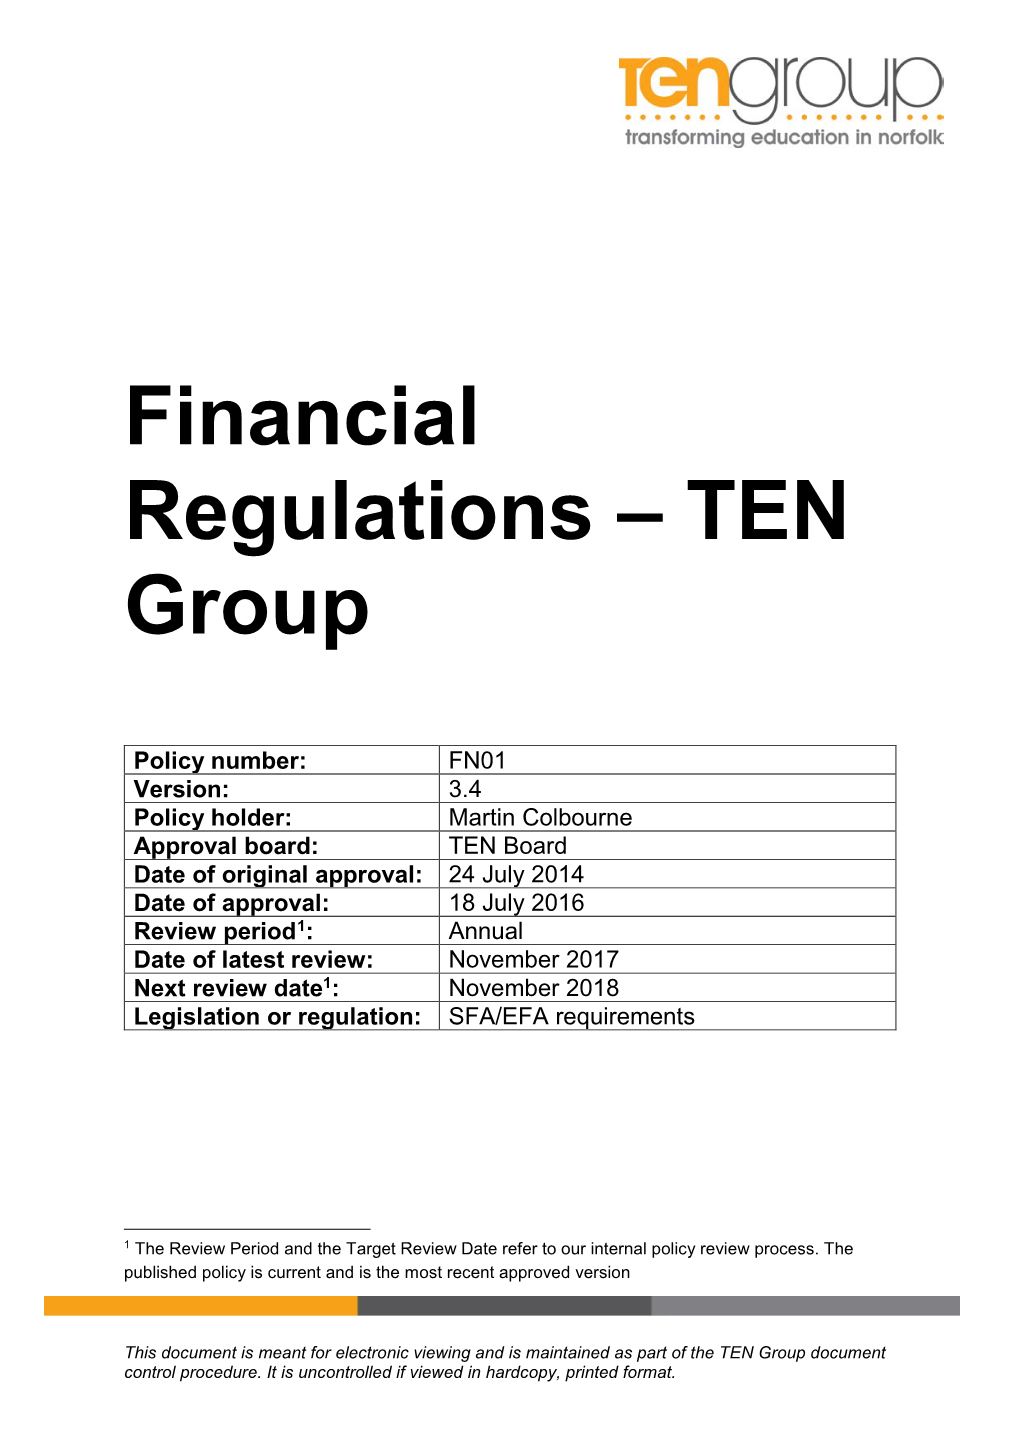 Financial Regulations – TEN Group